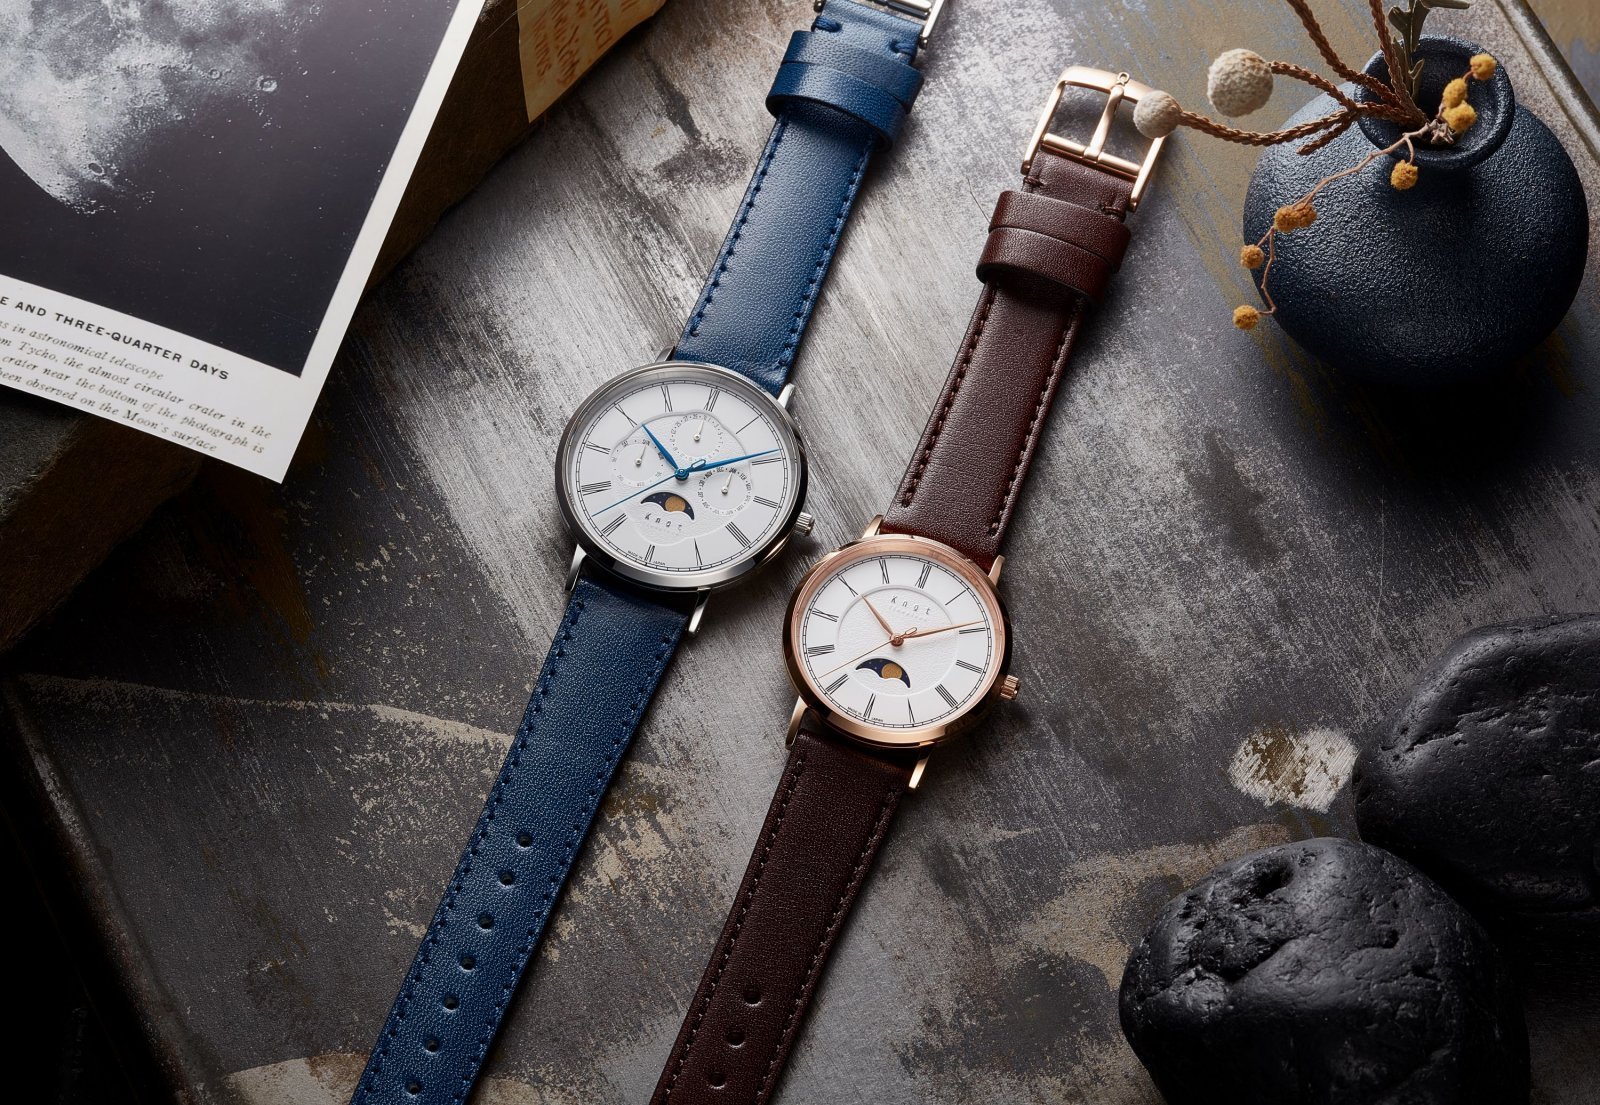 日本製にこだわった腕時計ブランド「ノット」から、ムーン